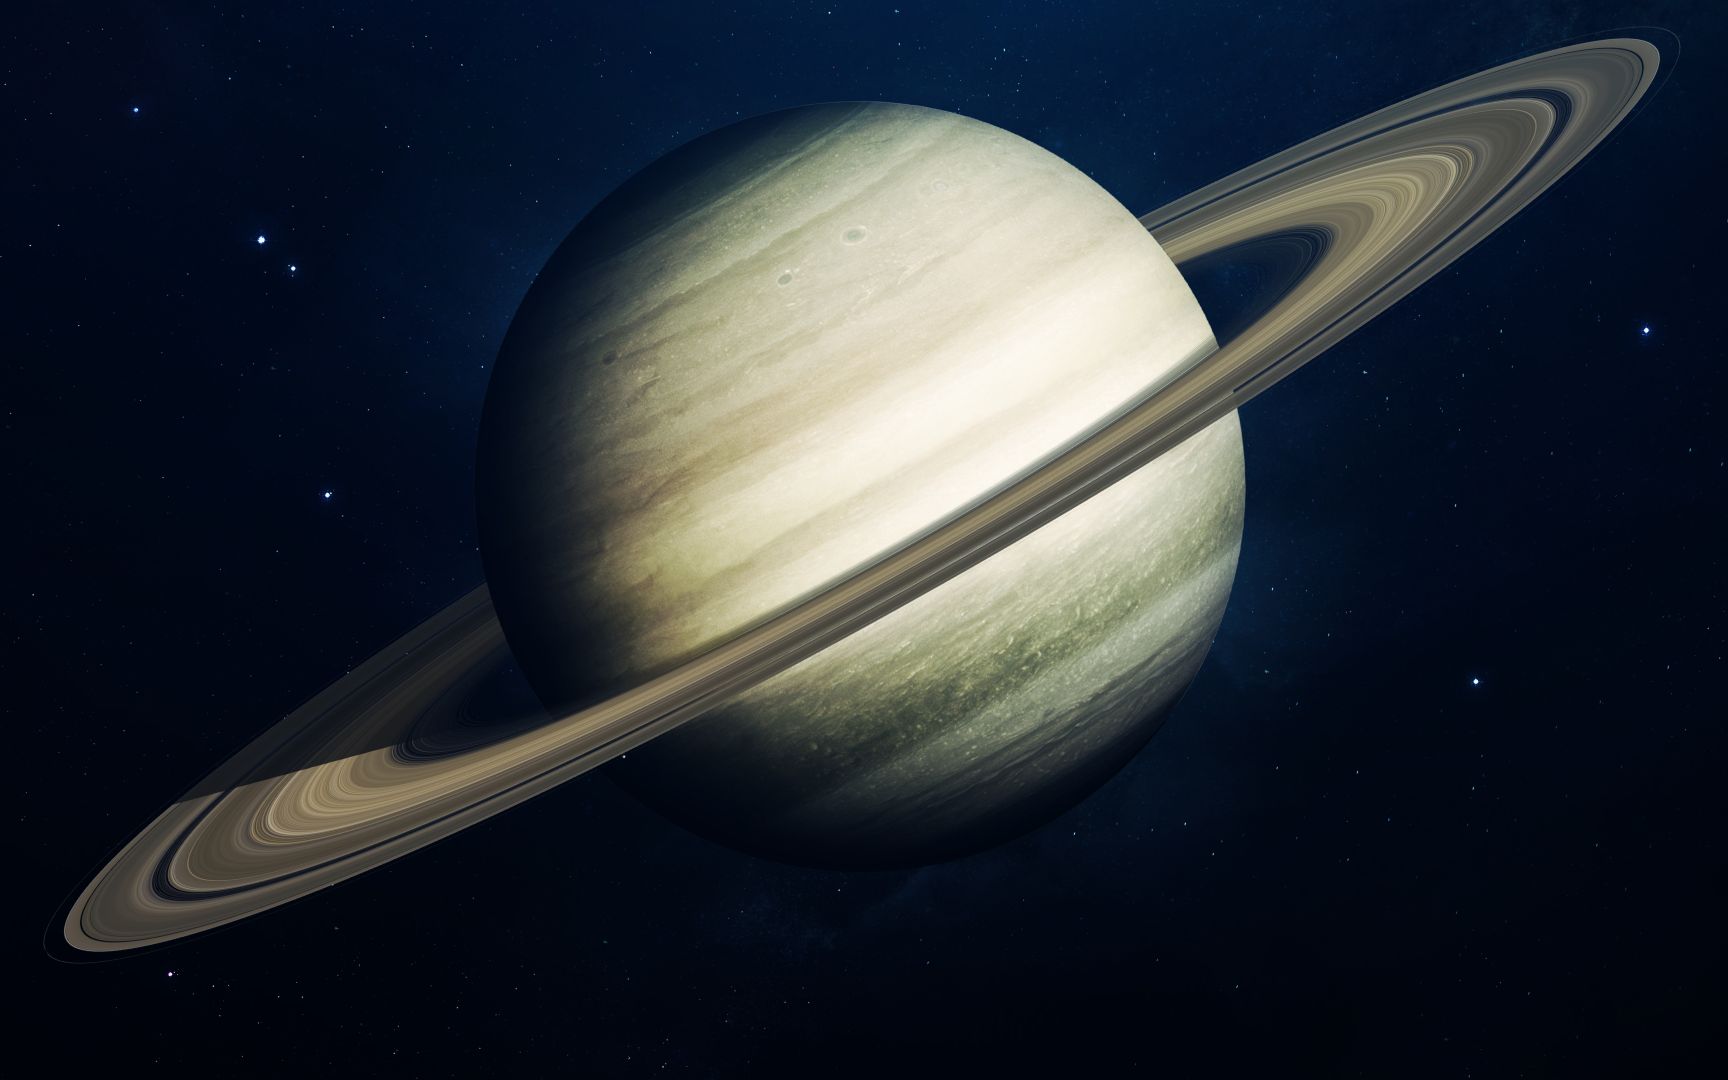 Кольца у планет солнечной системы